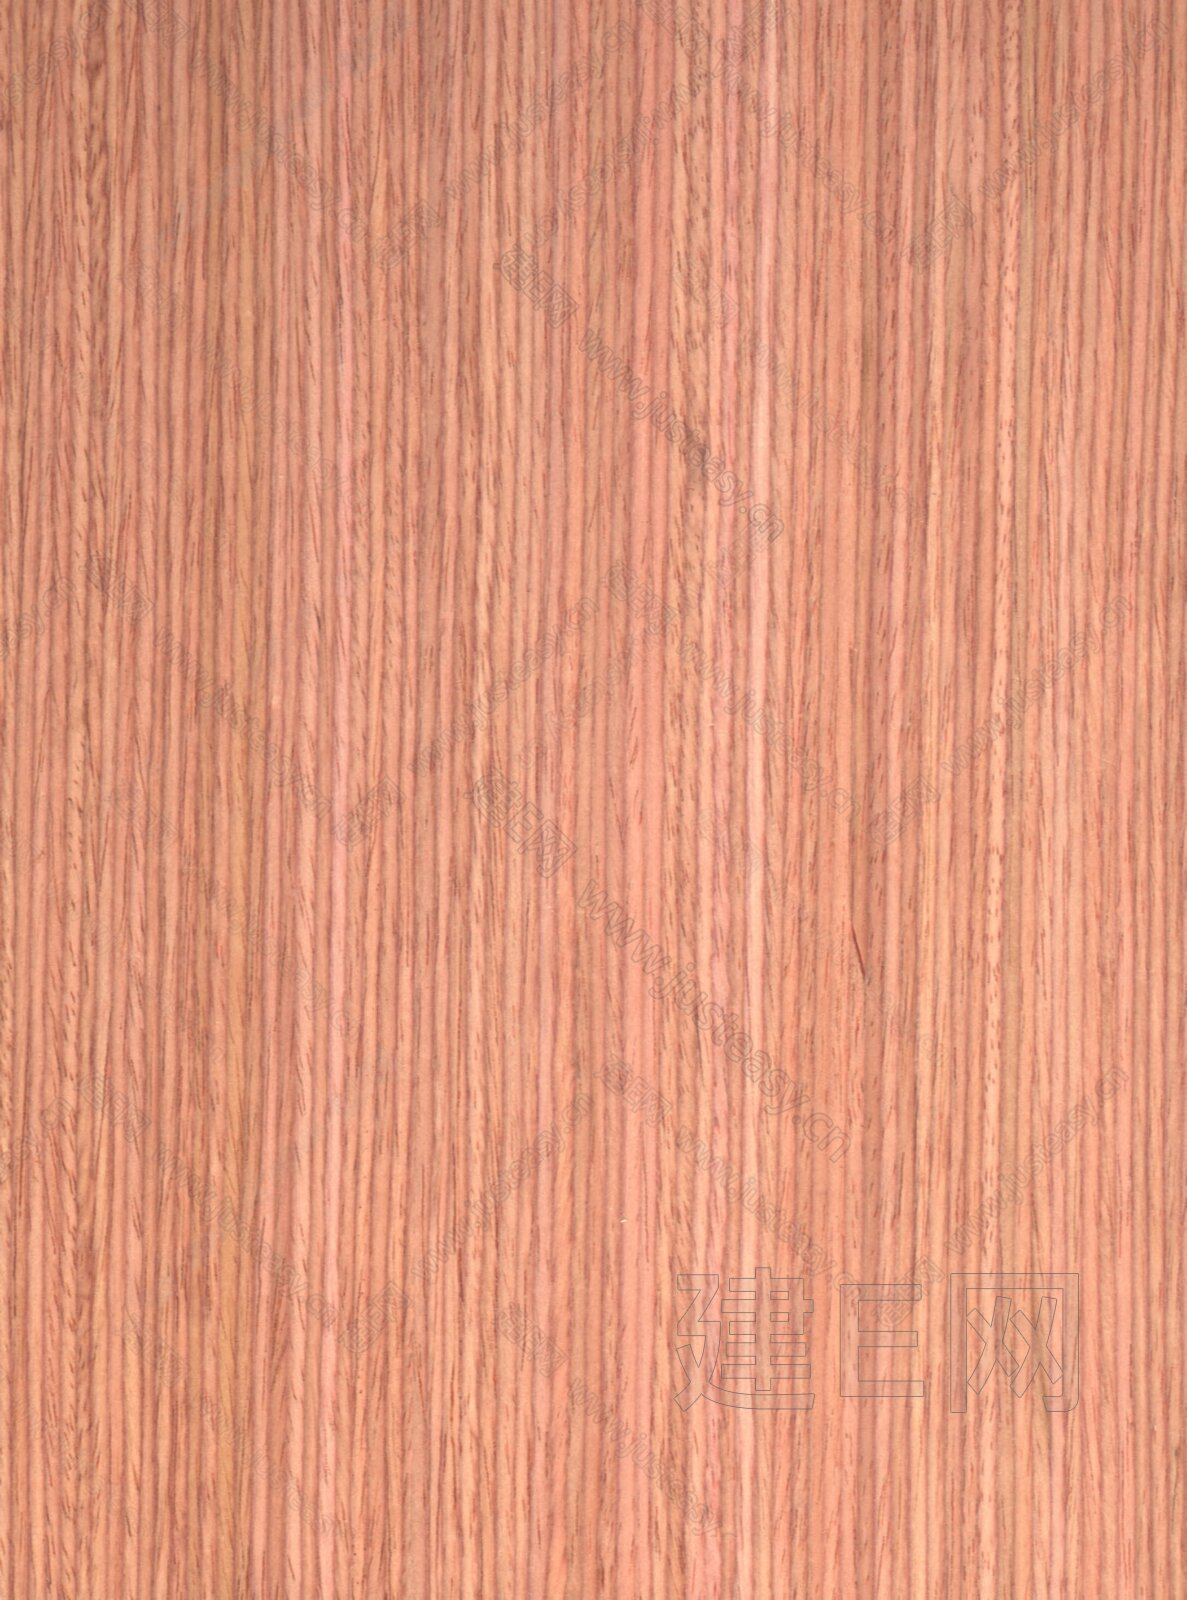 玫瑰木炭化木地板-上海览现木业有限公司